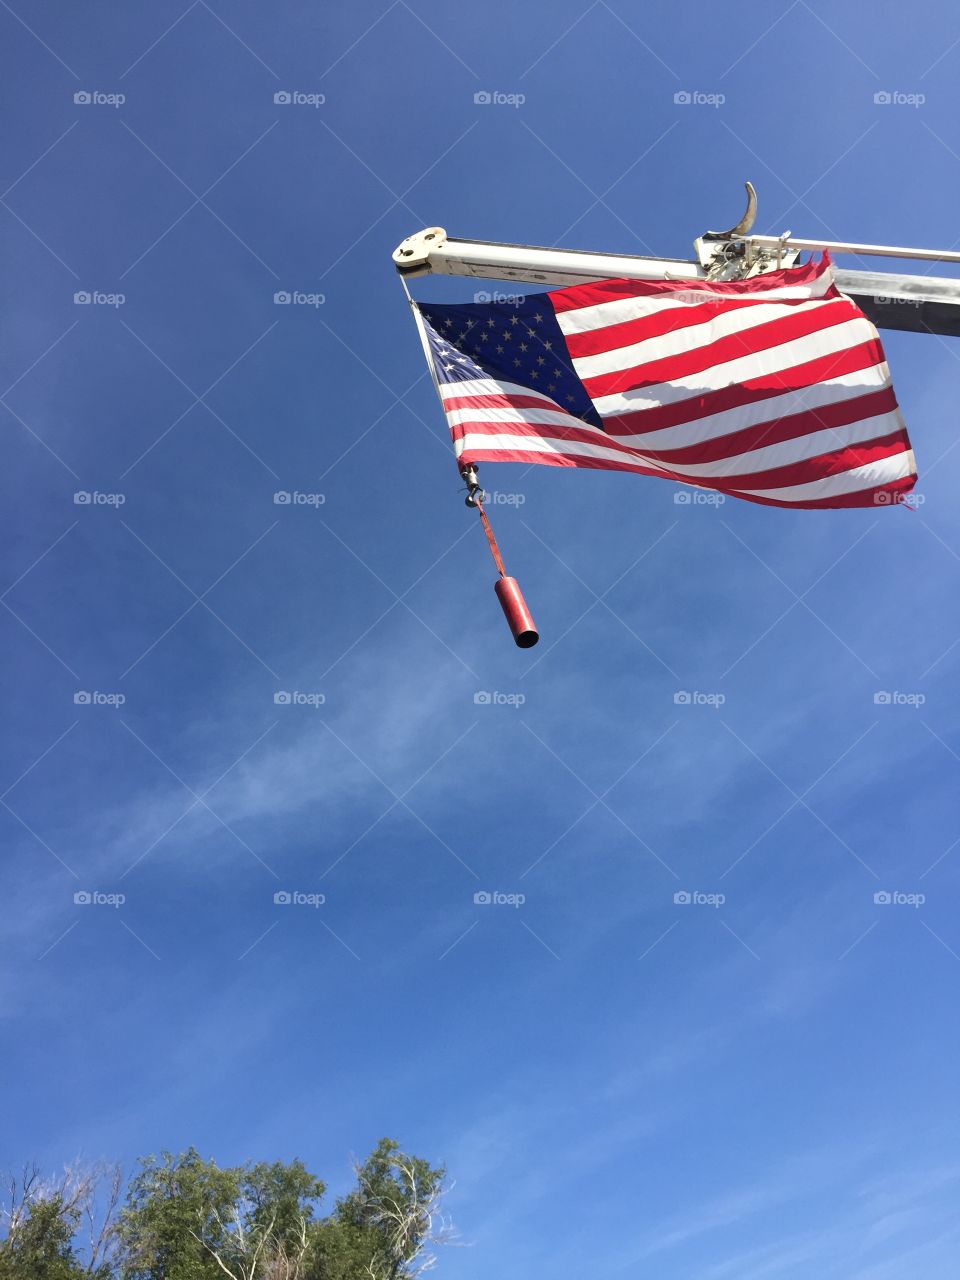 American flag viewed from below